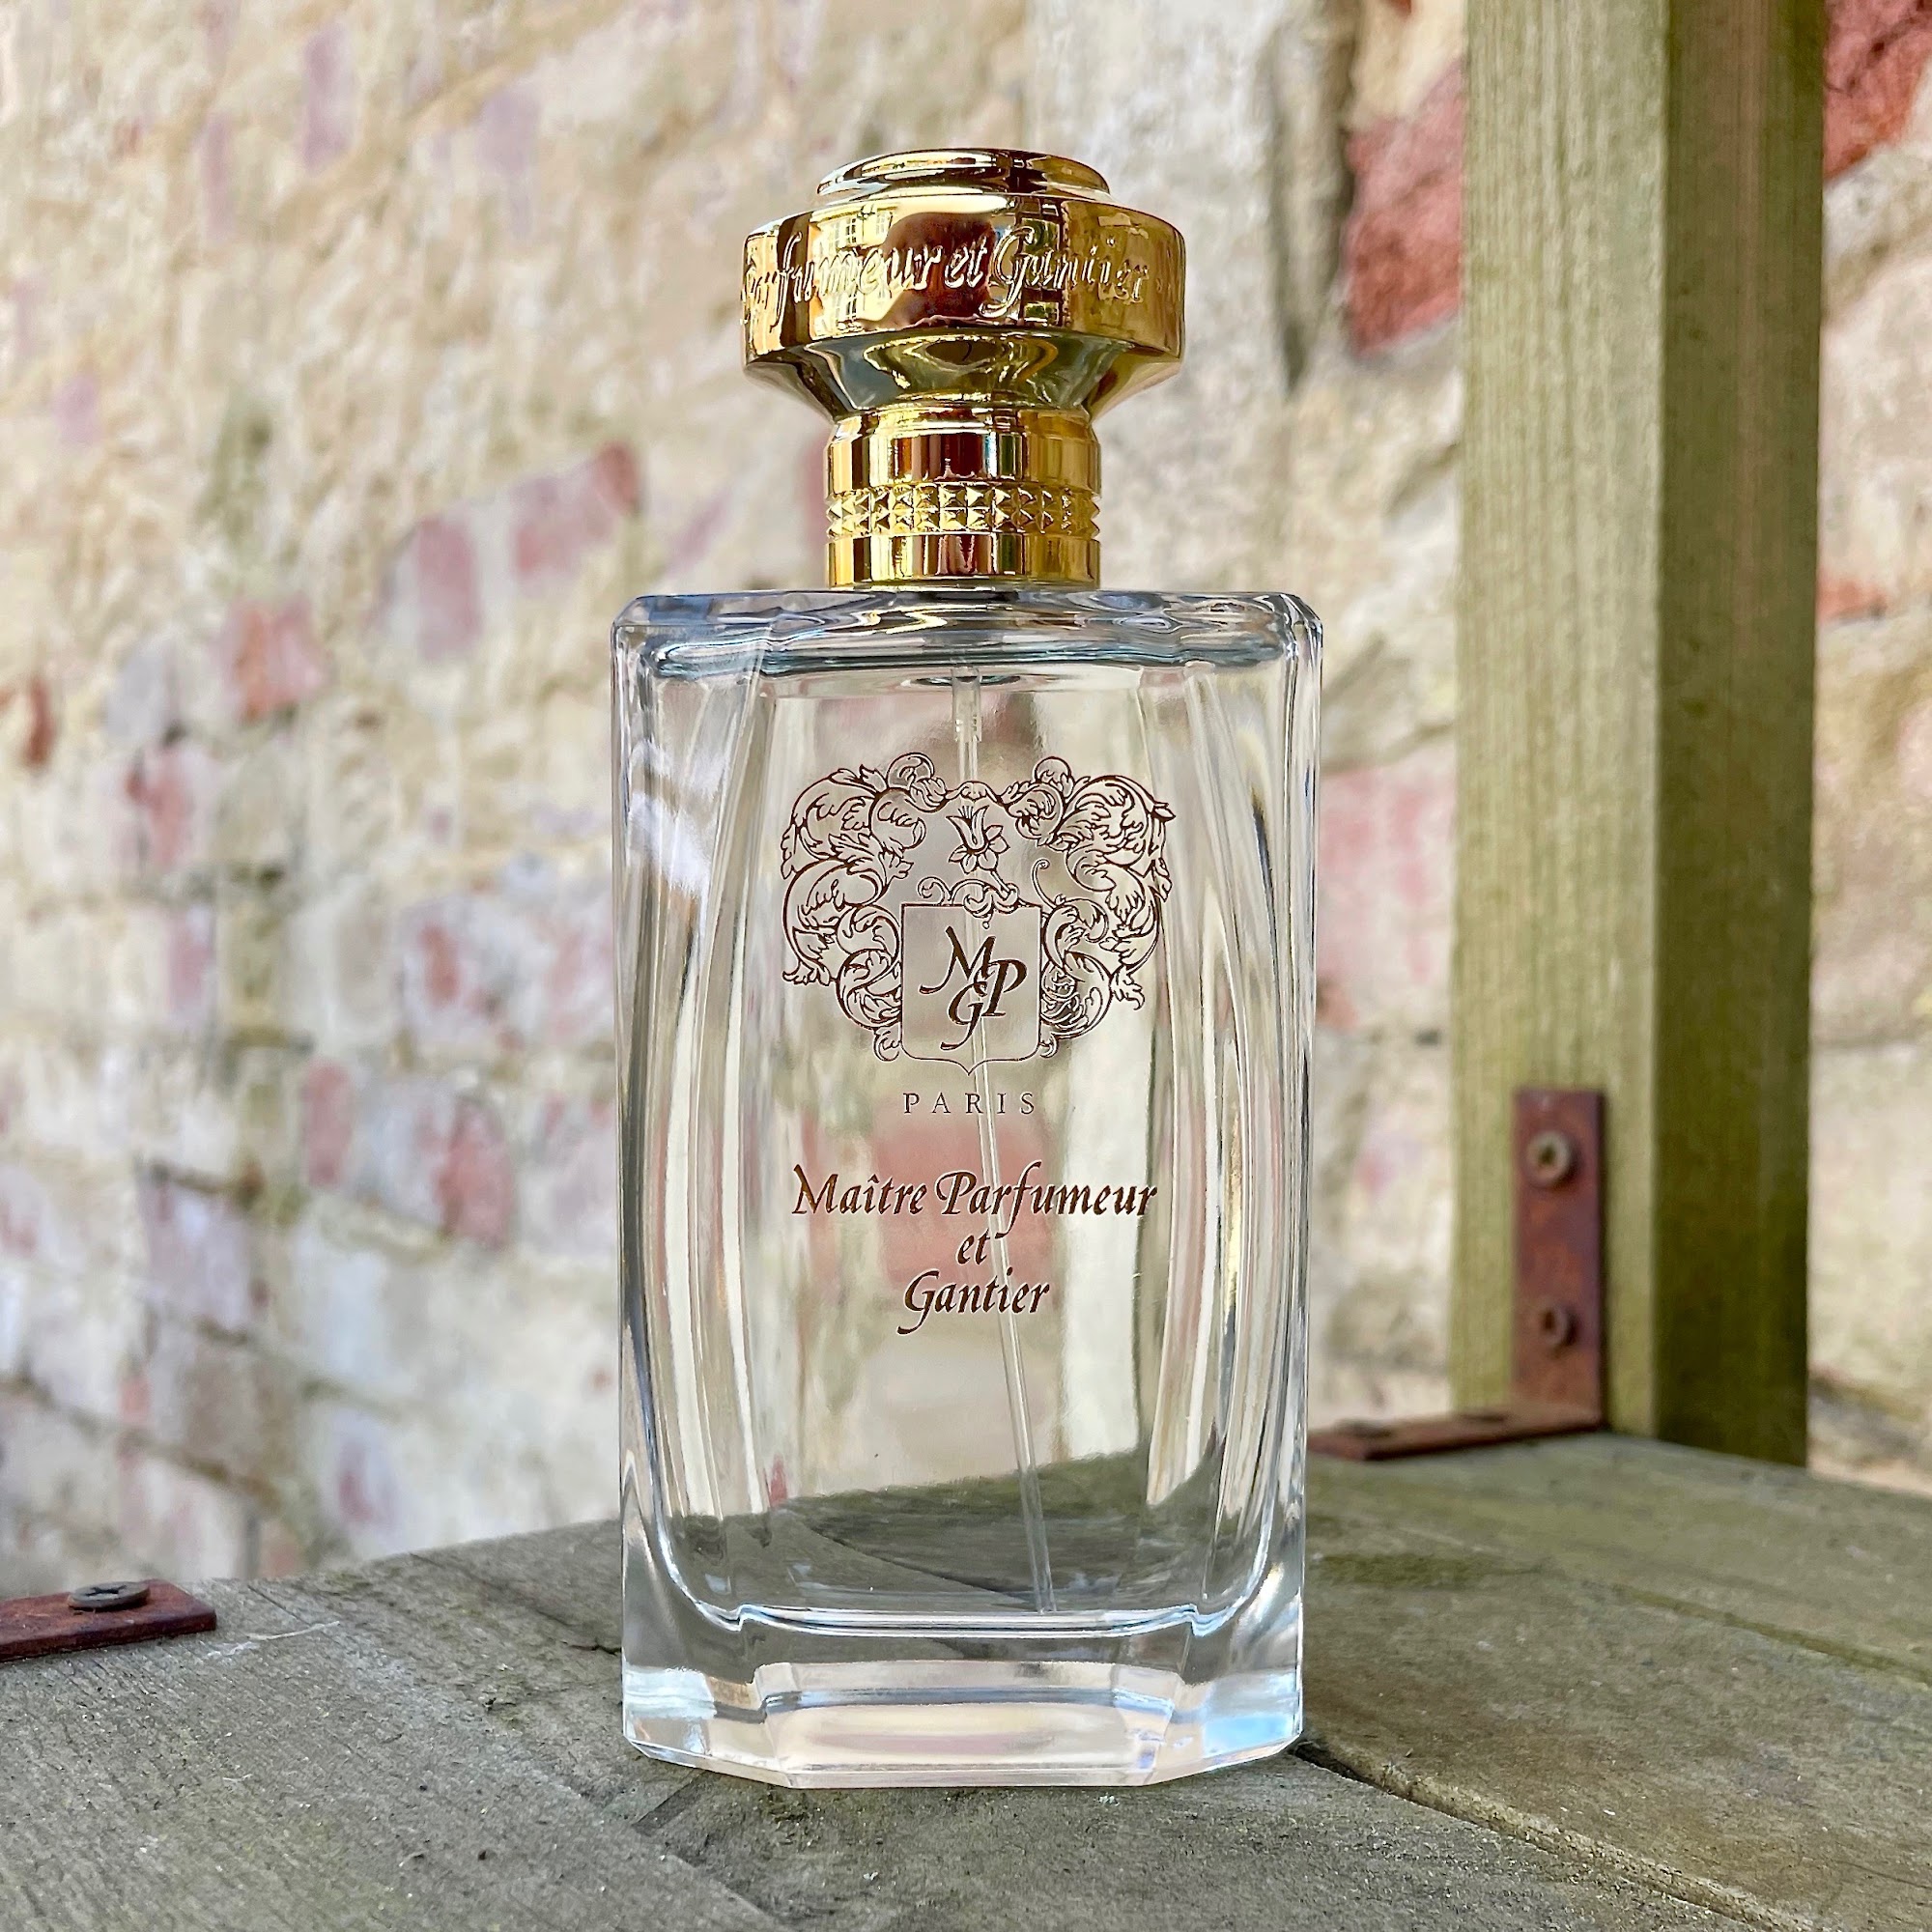 A bottle of Garrigue perfume by Maître Parfumeur et Gantier